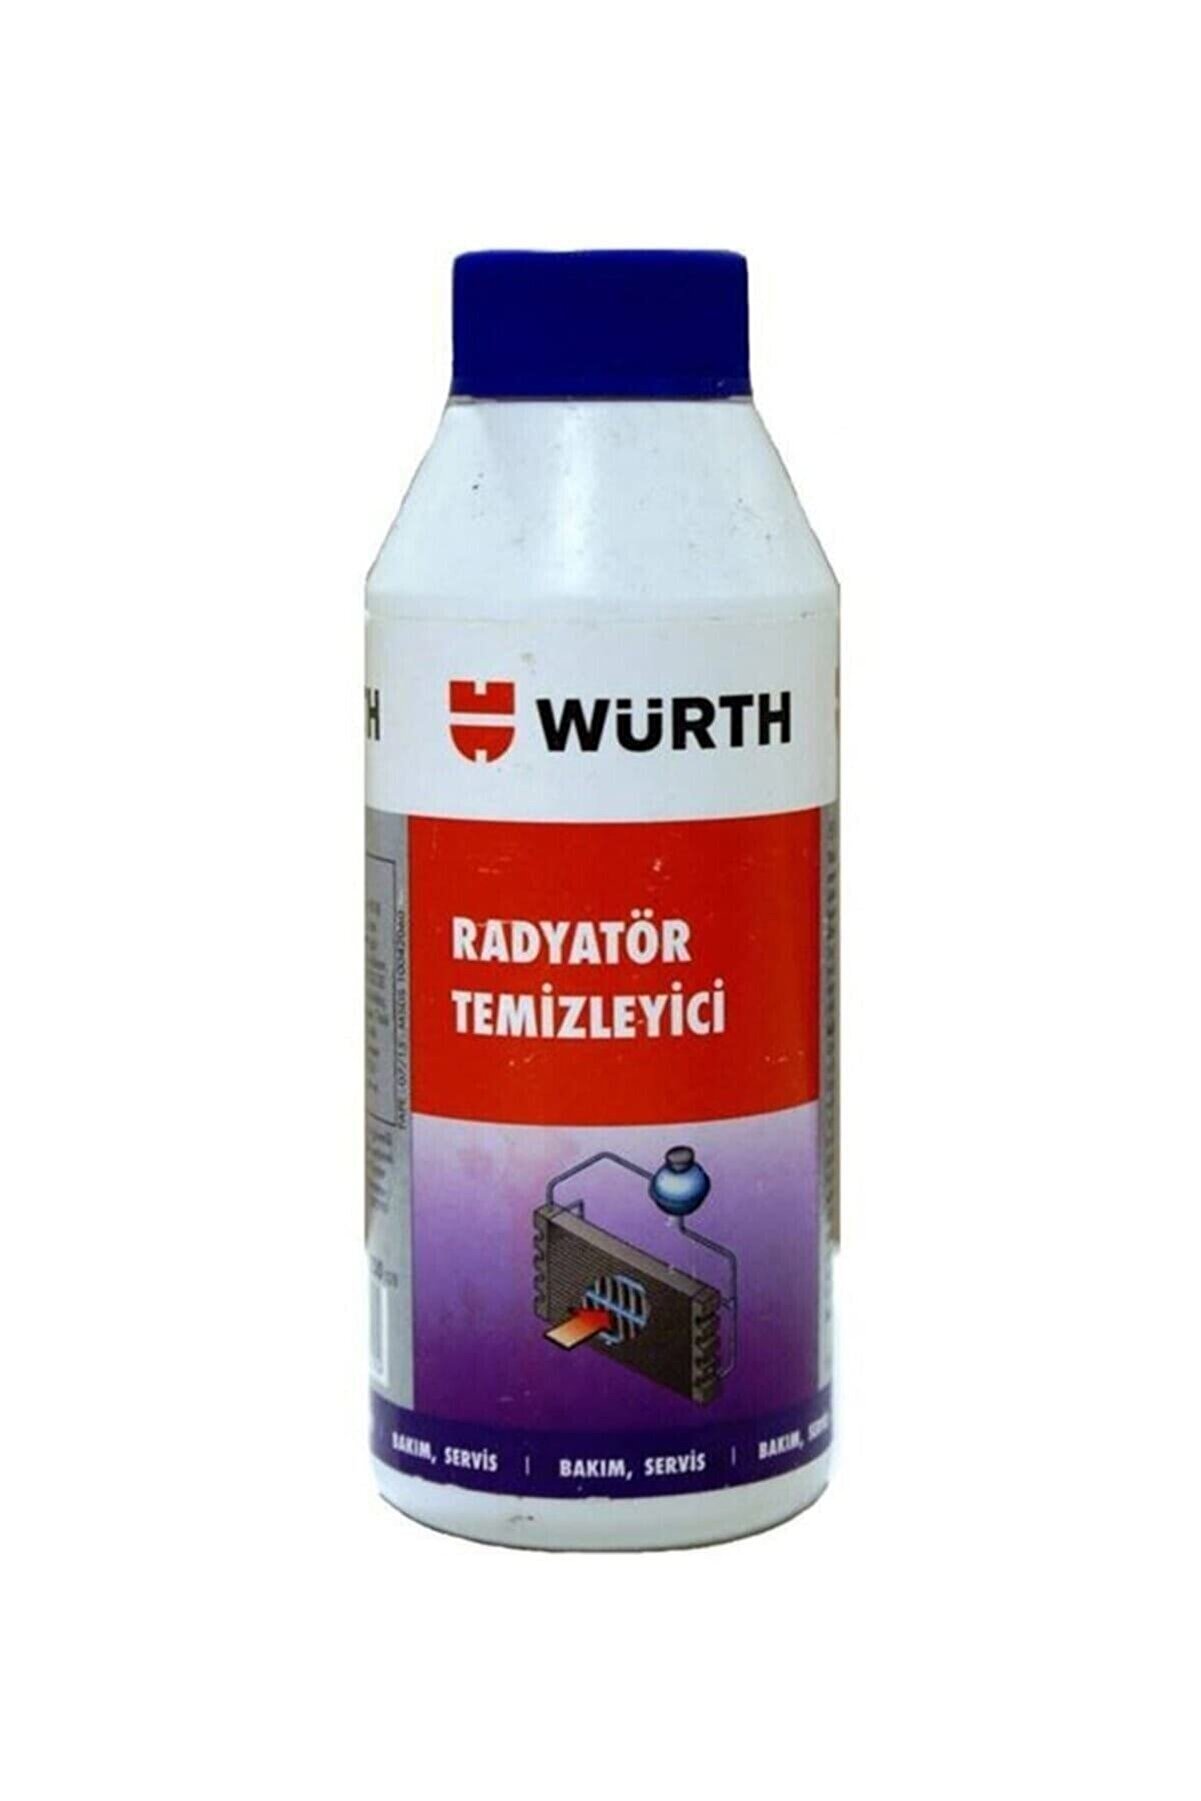 Würth Radyator Temizleyici (WURTH) 250 ml W (WRT-5861510250028)